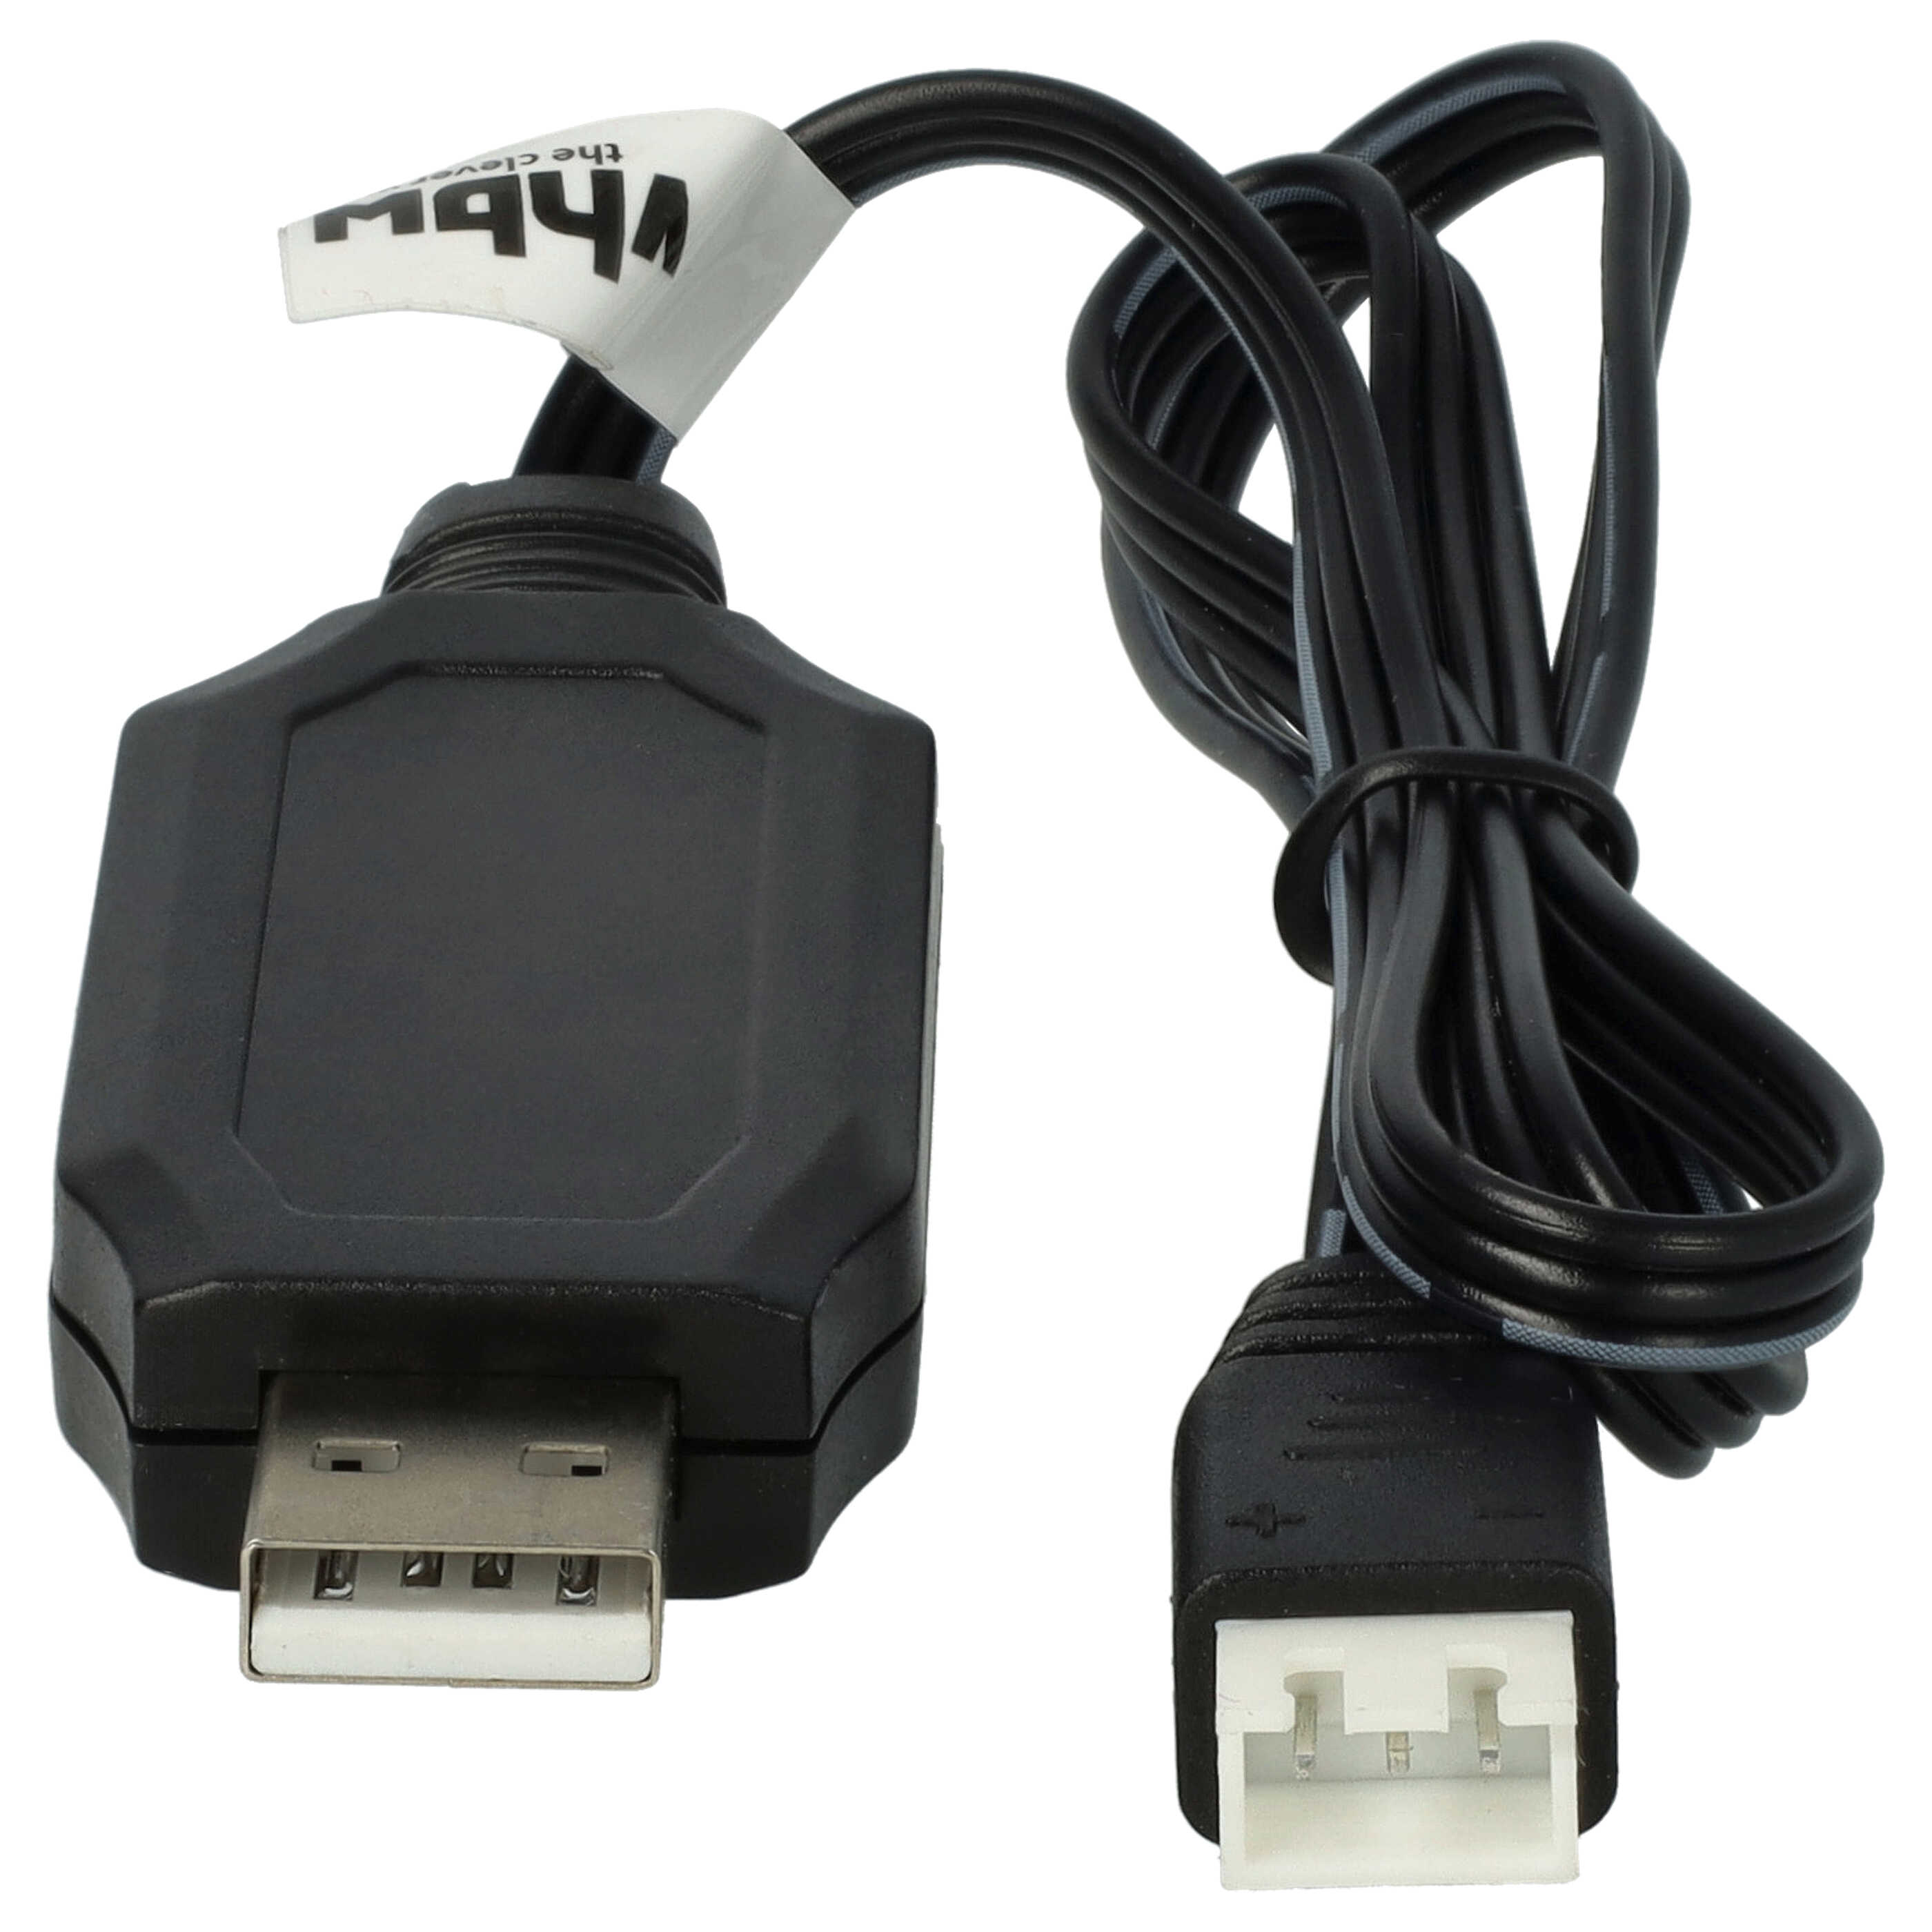 Cable de carga USB para batería JST XH-3P, modelo RC - 60 cm 4,2 V